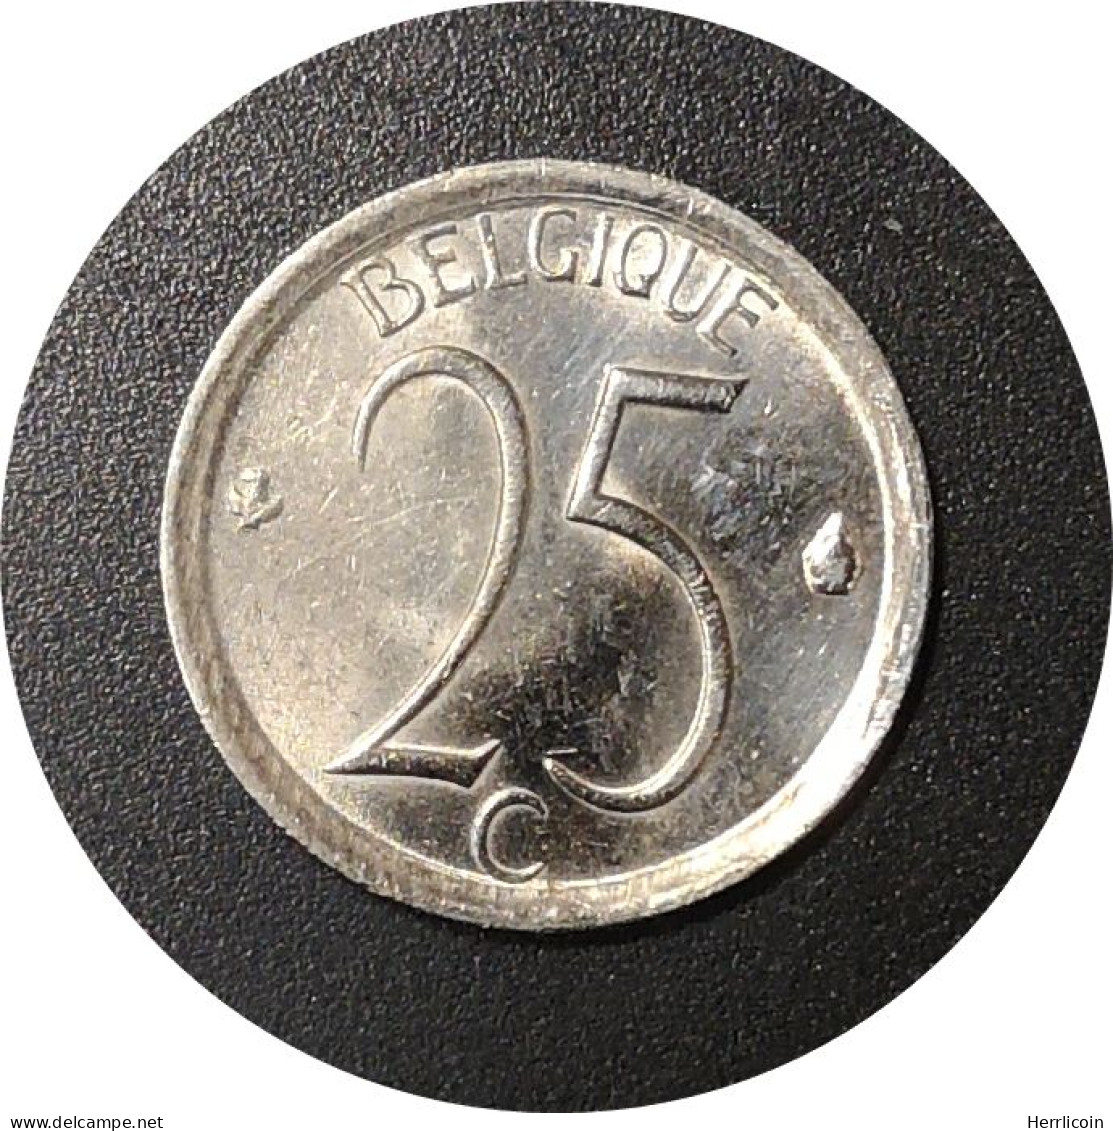 Monnaie Belgique - 1969 - 25 Centimes - Baudouin Ier En Français - 25 Centimes